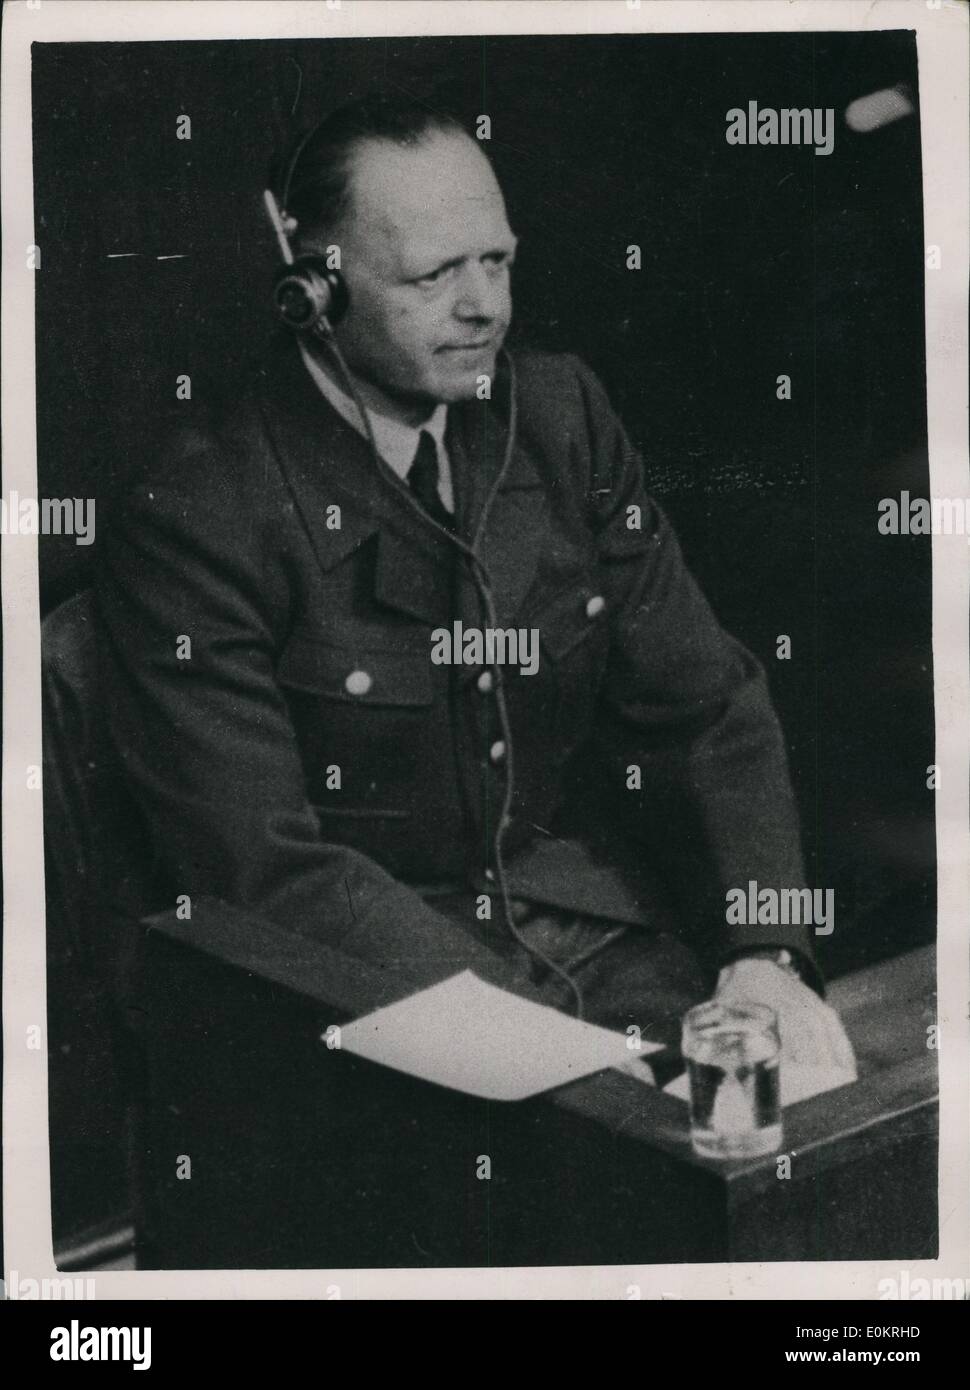 Avril 04, 1947 - Milch emprisonné à vie : Field Marshall Brhard lch, ancien sous-secrétaire d'État nazi pour l'air, a été reconnu coupable lors d'un Nureberg d'attendre les crimes, et condamné à l'emprisonnement à vie. Milch, ancien assistant de Goering ay le ministère de l'air allemande, a été reconnu coupable d'expulser les gens de salve d'être responsable du travail pour le meurtre de prisonniers. La photo montre le maréchal Milch photographié t l'année dernière de Nuremberg lorsqu'il a comparu comme témoin pour la défense de Goering. Banque D'Images